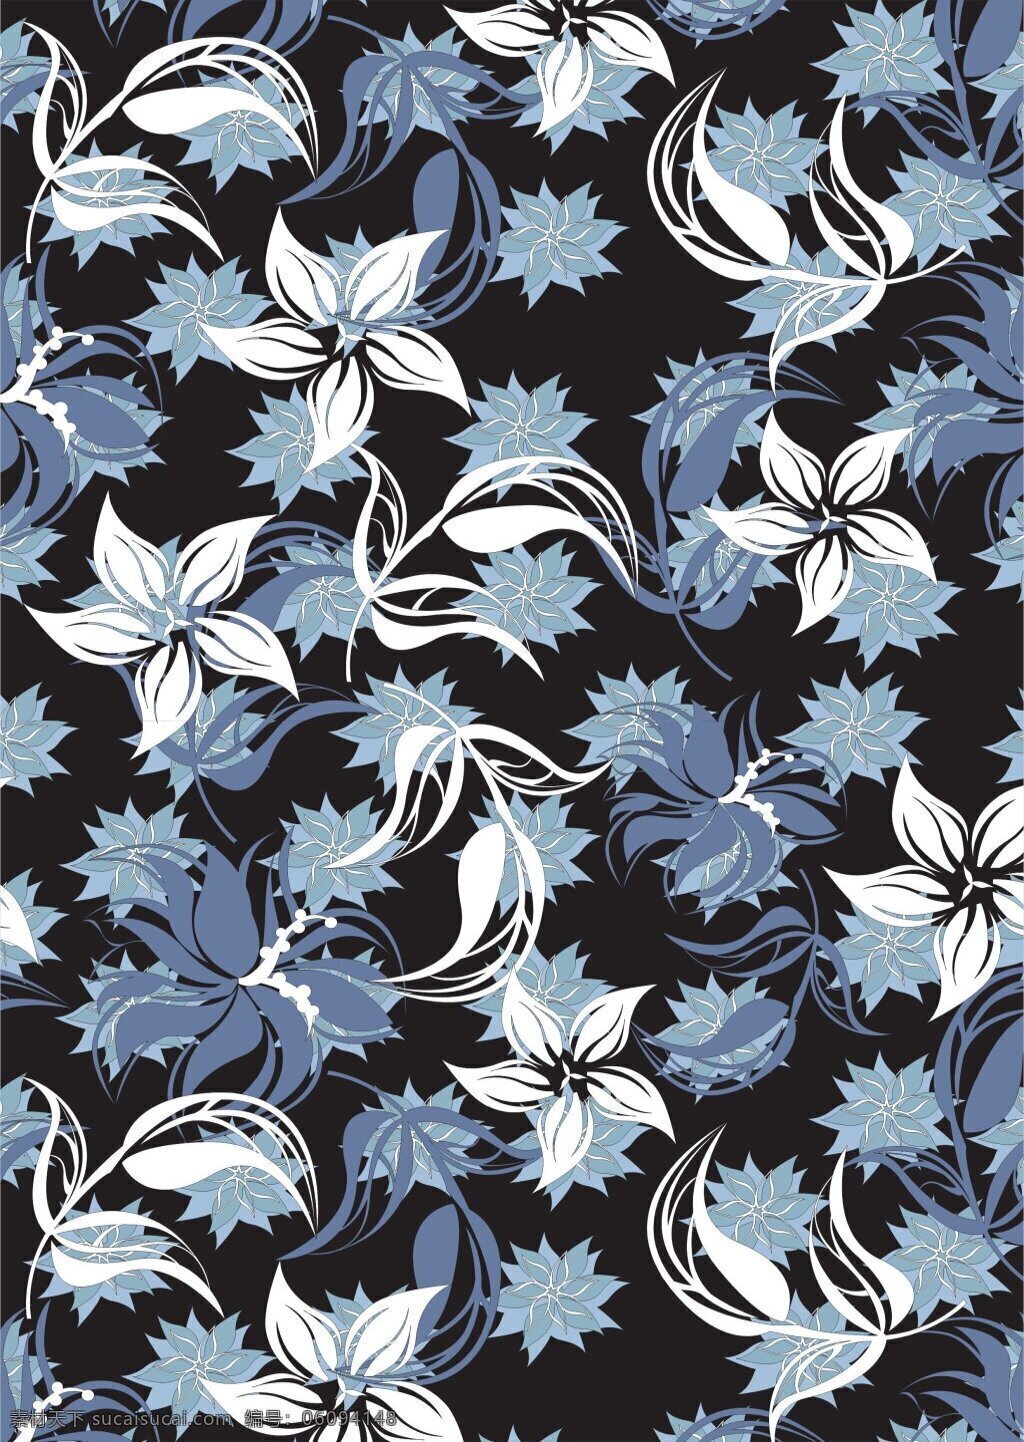 神秘 灰 蓝色 植物 花卉 广告 背景 清新植物 深色底纹 植物花卉